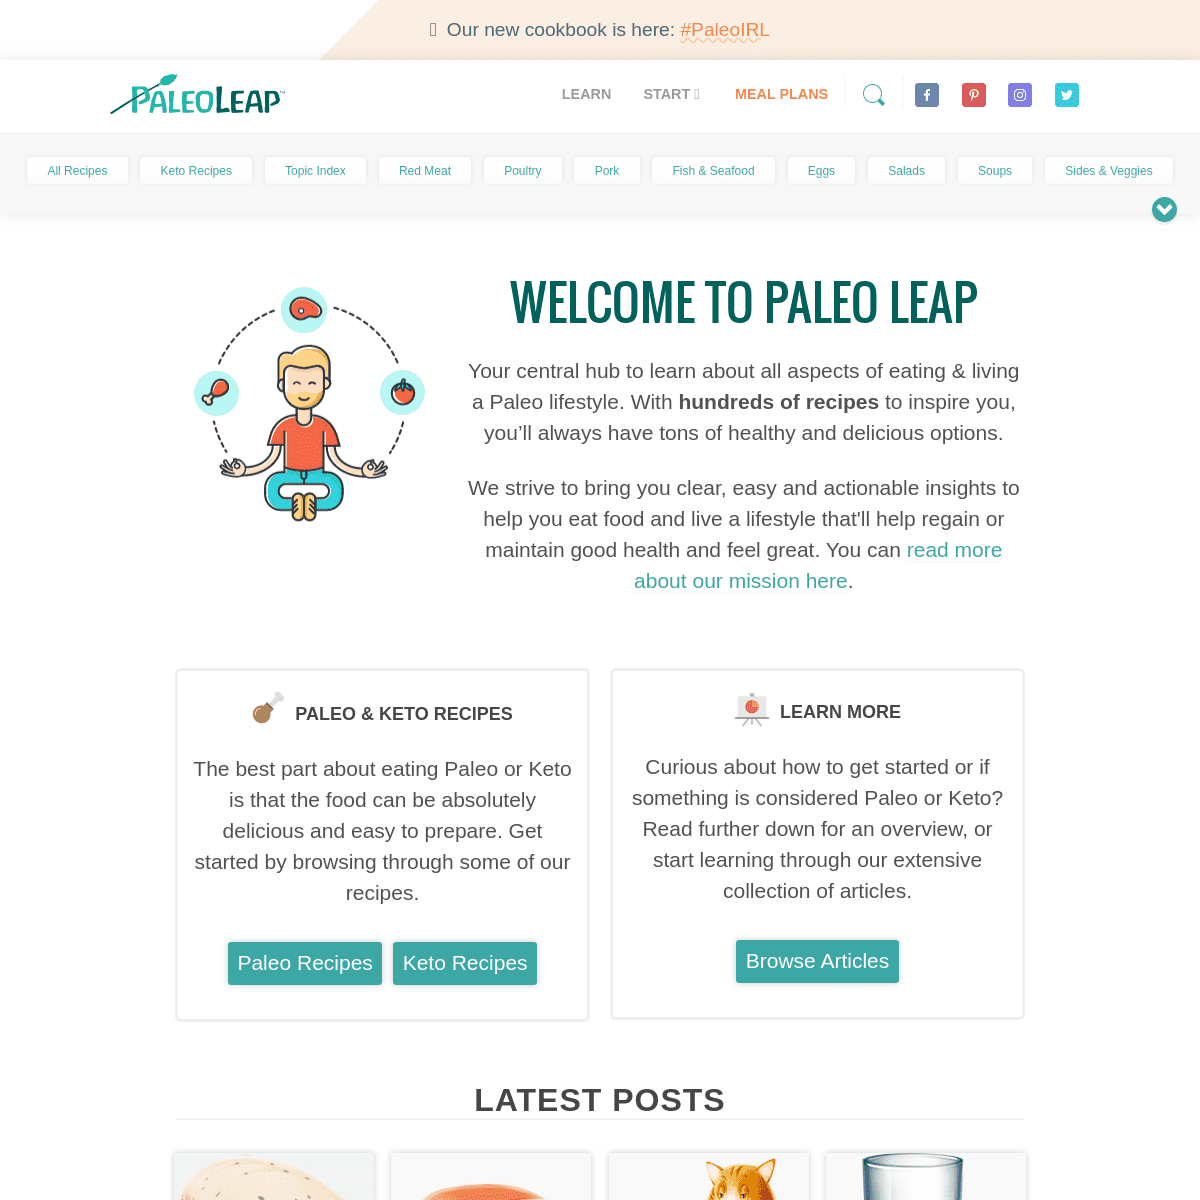 A complete backup of paleoleap.com